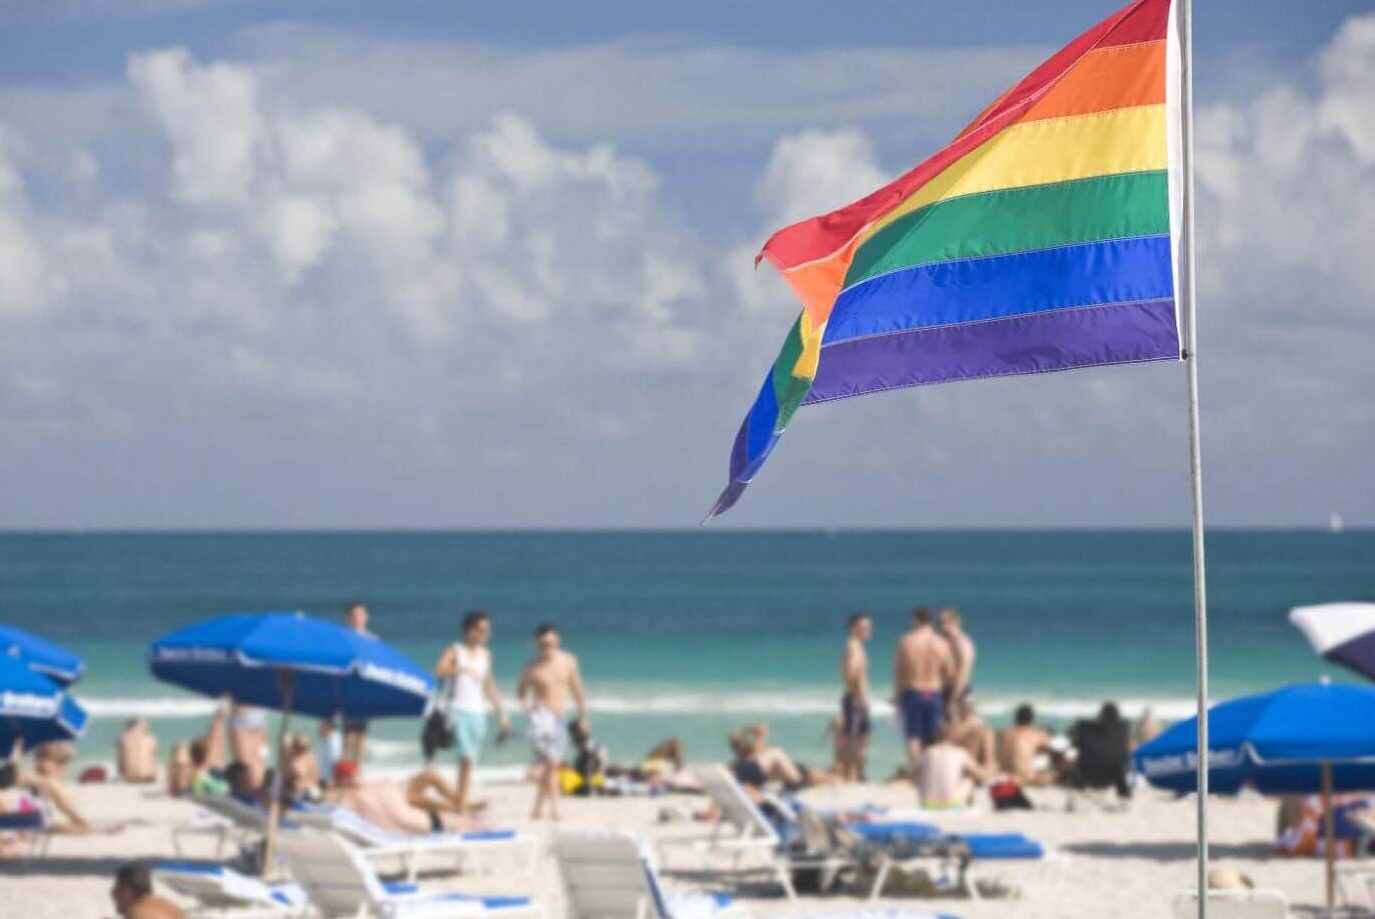 Fort Lauderdale: It's the LGBTS Destination